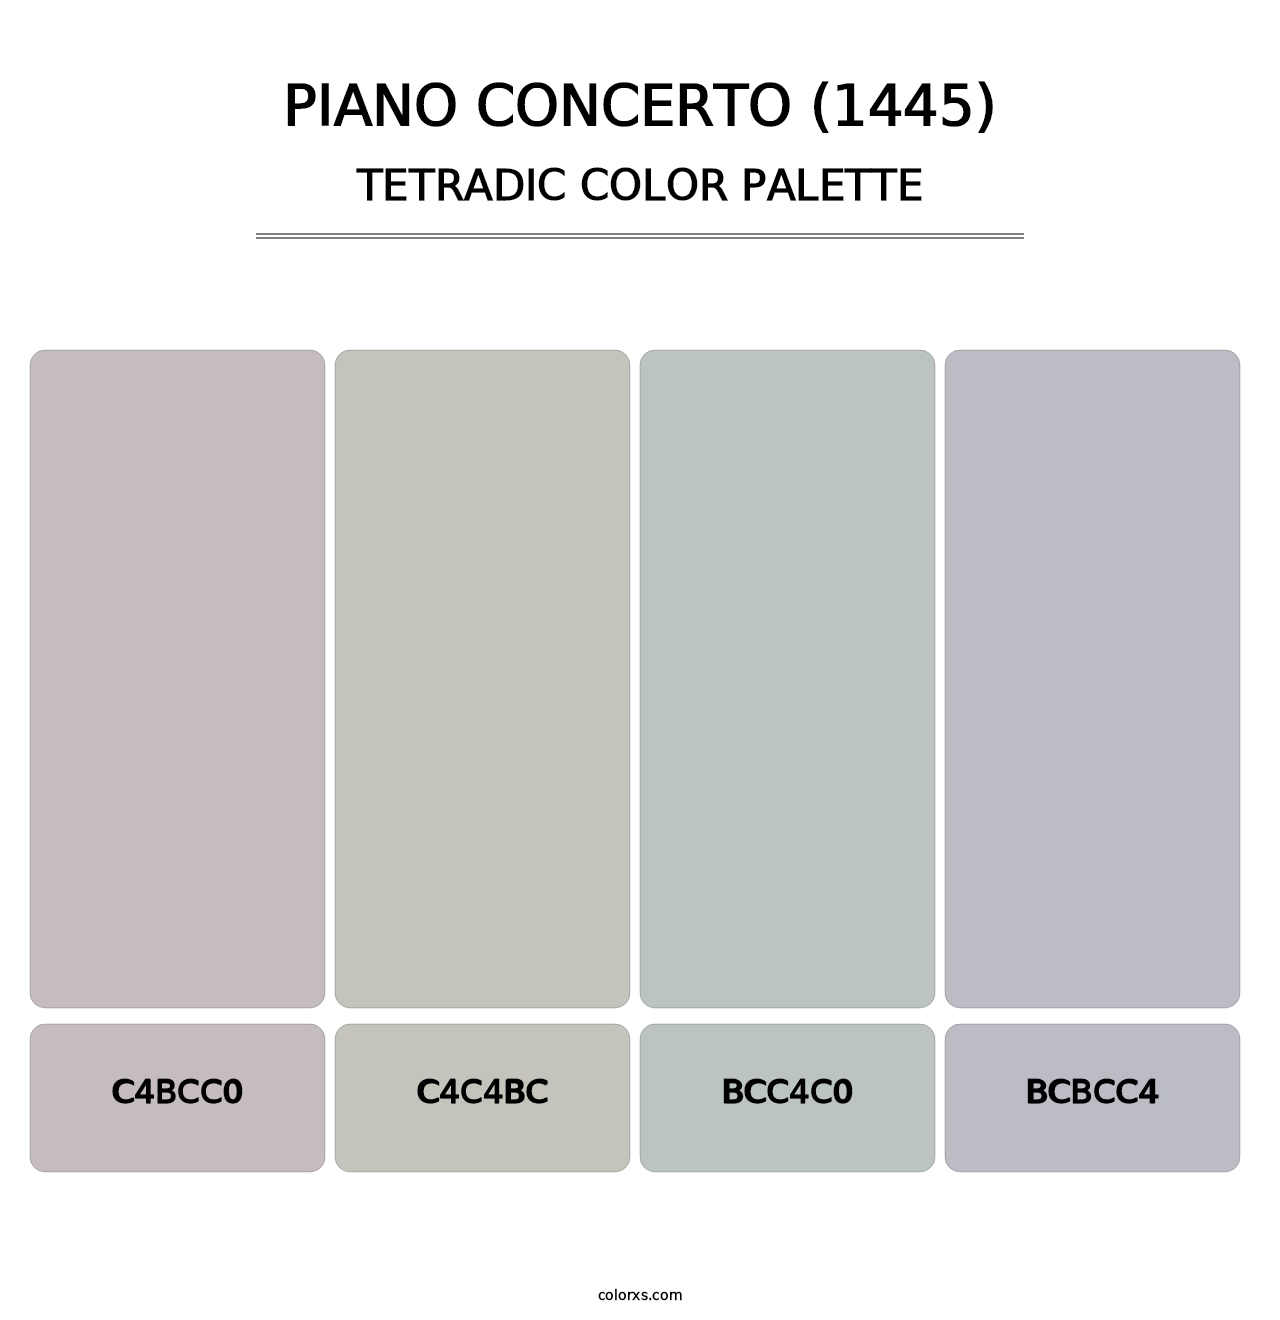 Piano Concerto (1445) - Tetradic Color Palette